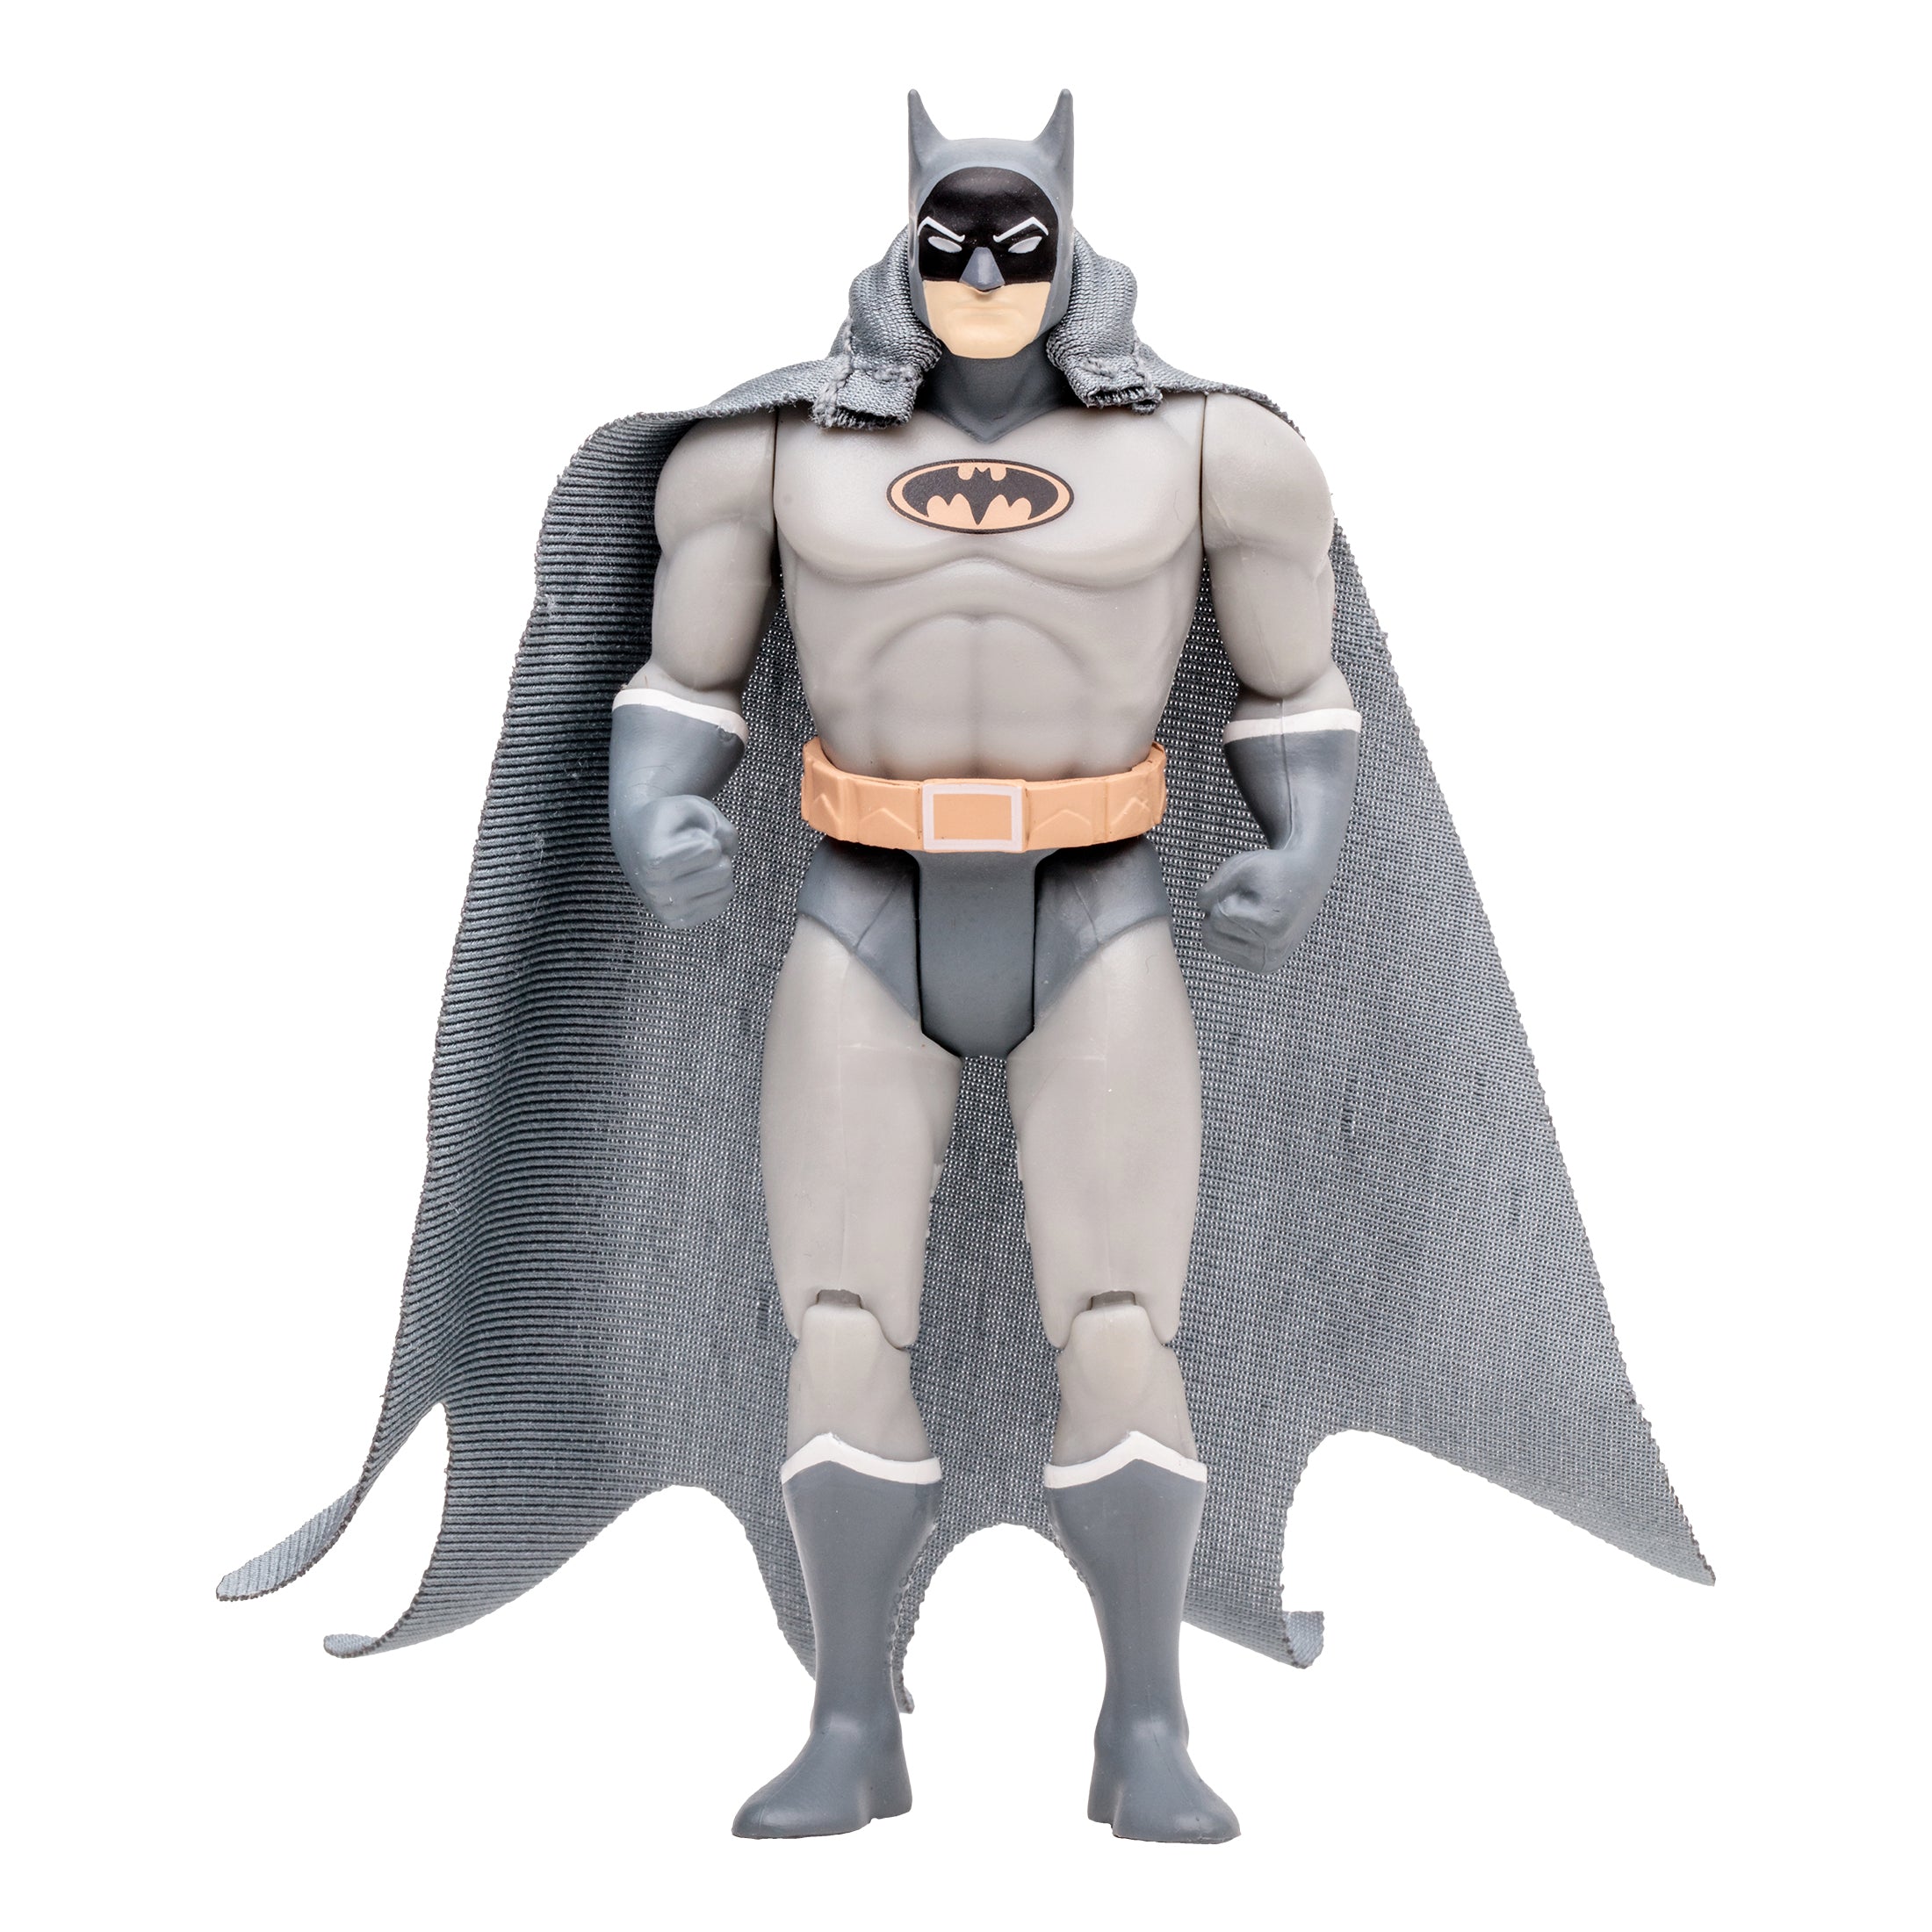 DC Direct Super Powers Figura de Accion: DC Comics Batman Manga - Batman 4.5 Pulgadas